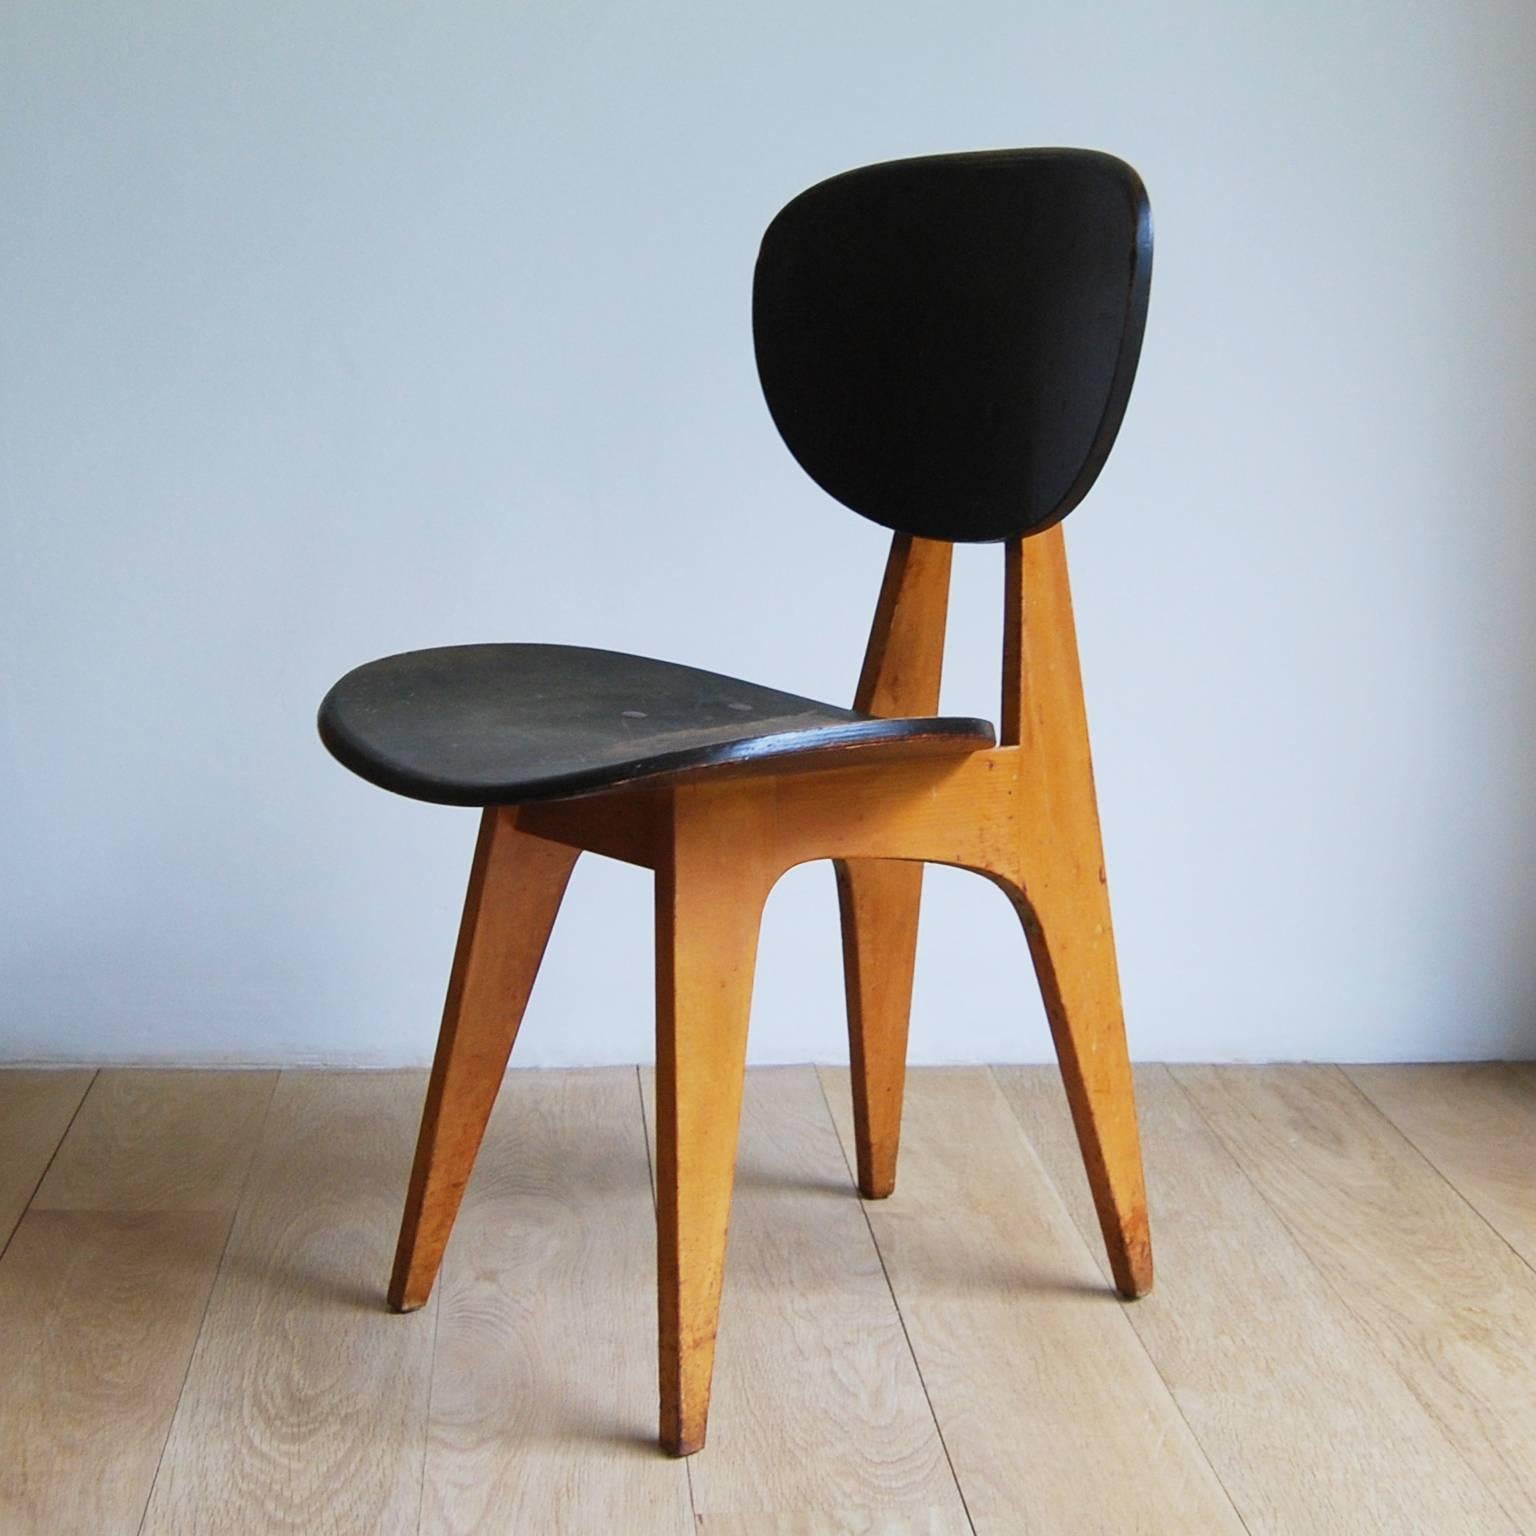 Japanese Pair of Side Chairs, Model No. 3221, by Junzo Sakakura